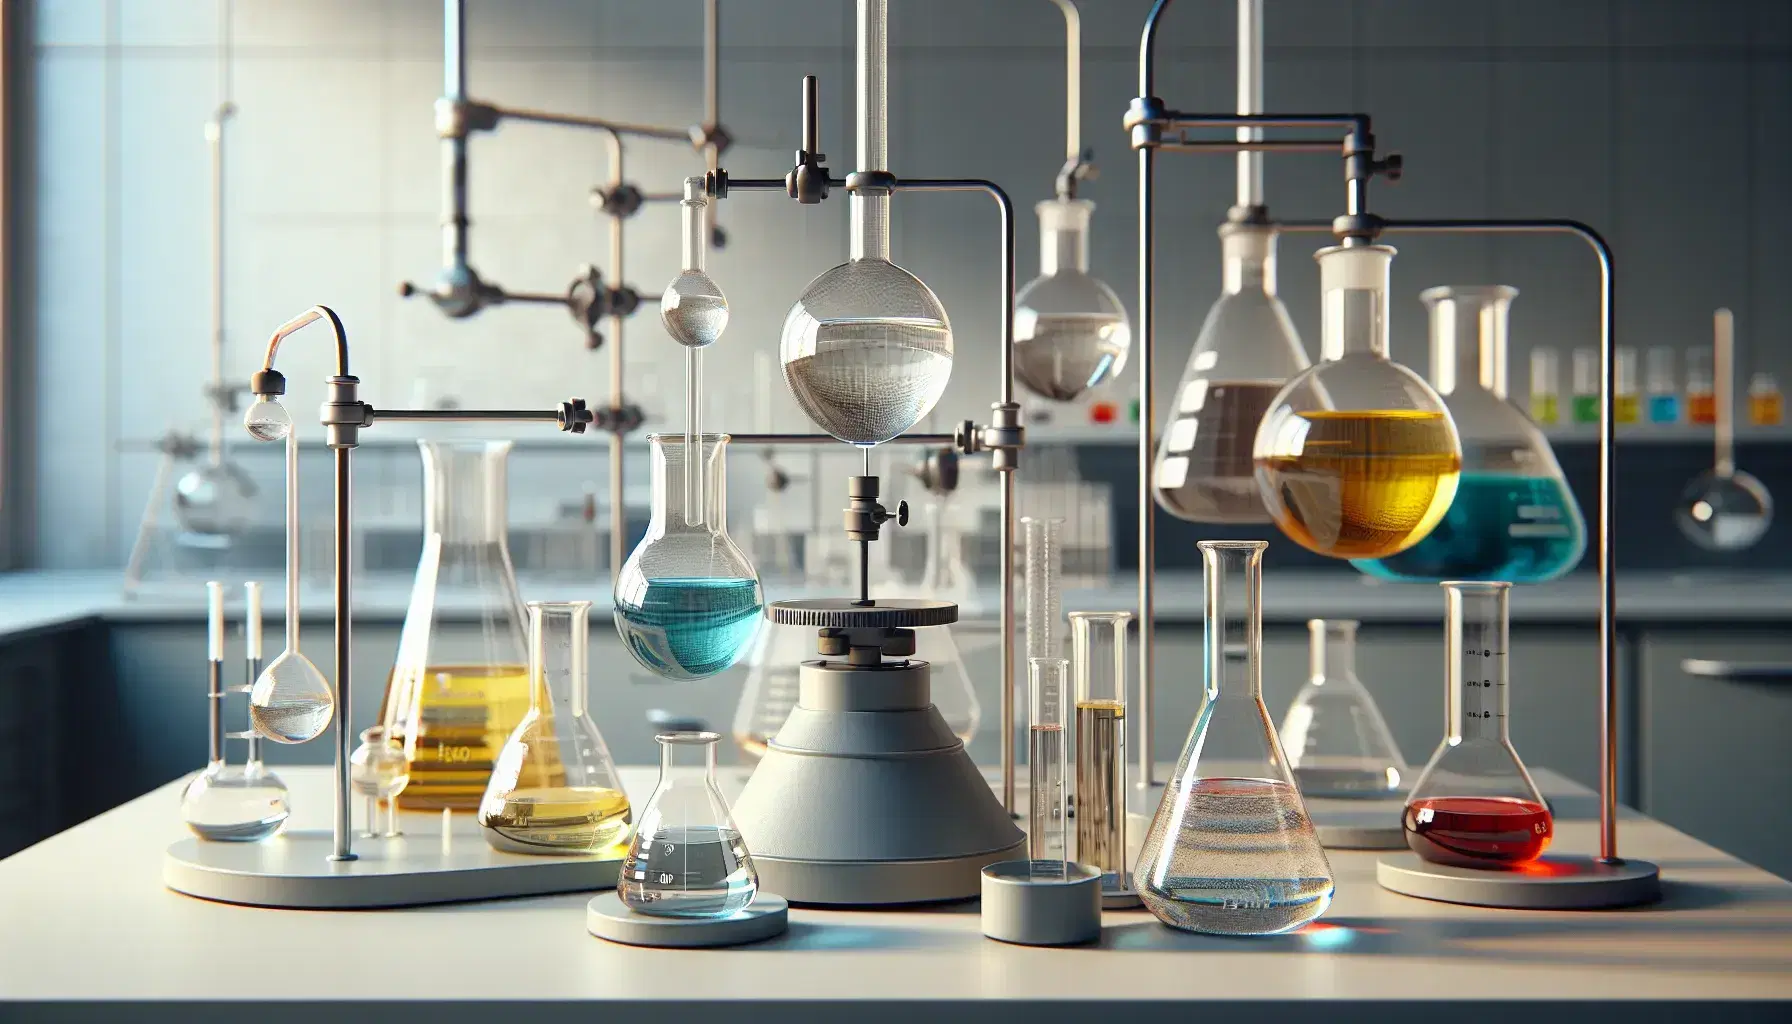 Laboratorio de química con mesa y erlenmeyers con líquidos de colores, matraz de fondo redondo, embudo de separación y mechero Bunsen apagado.